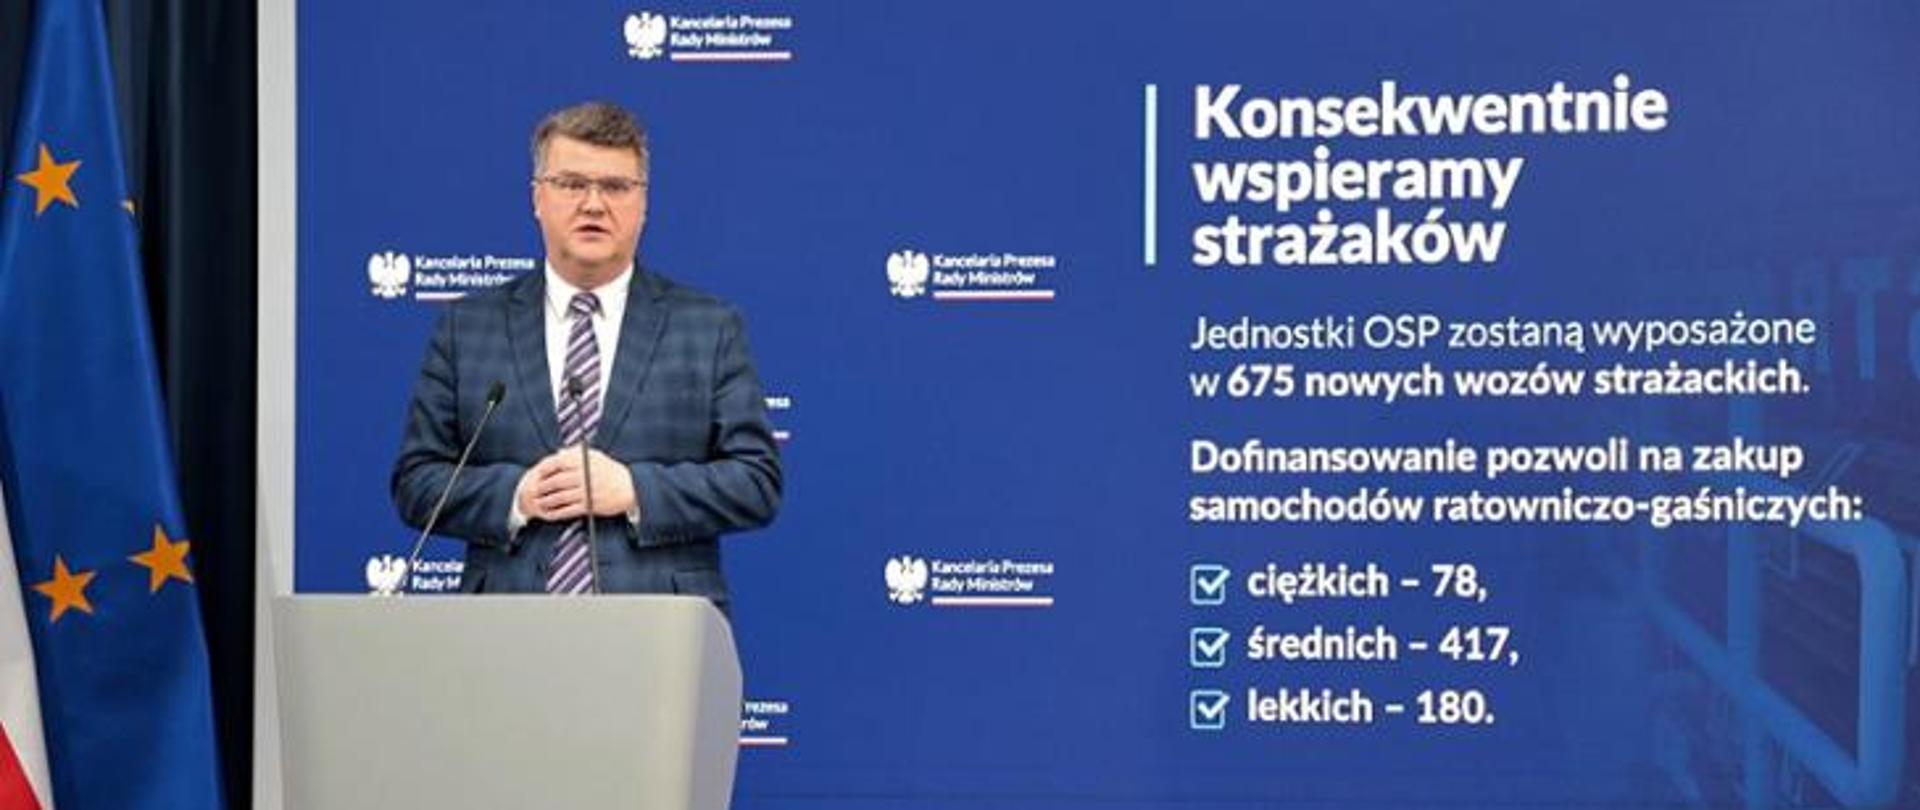 Zdjęcie przedstawia Pana Ministra Macieja Wąsika podczas przemówienia 